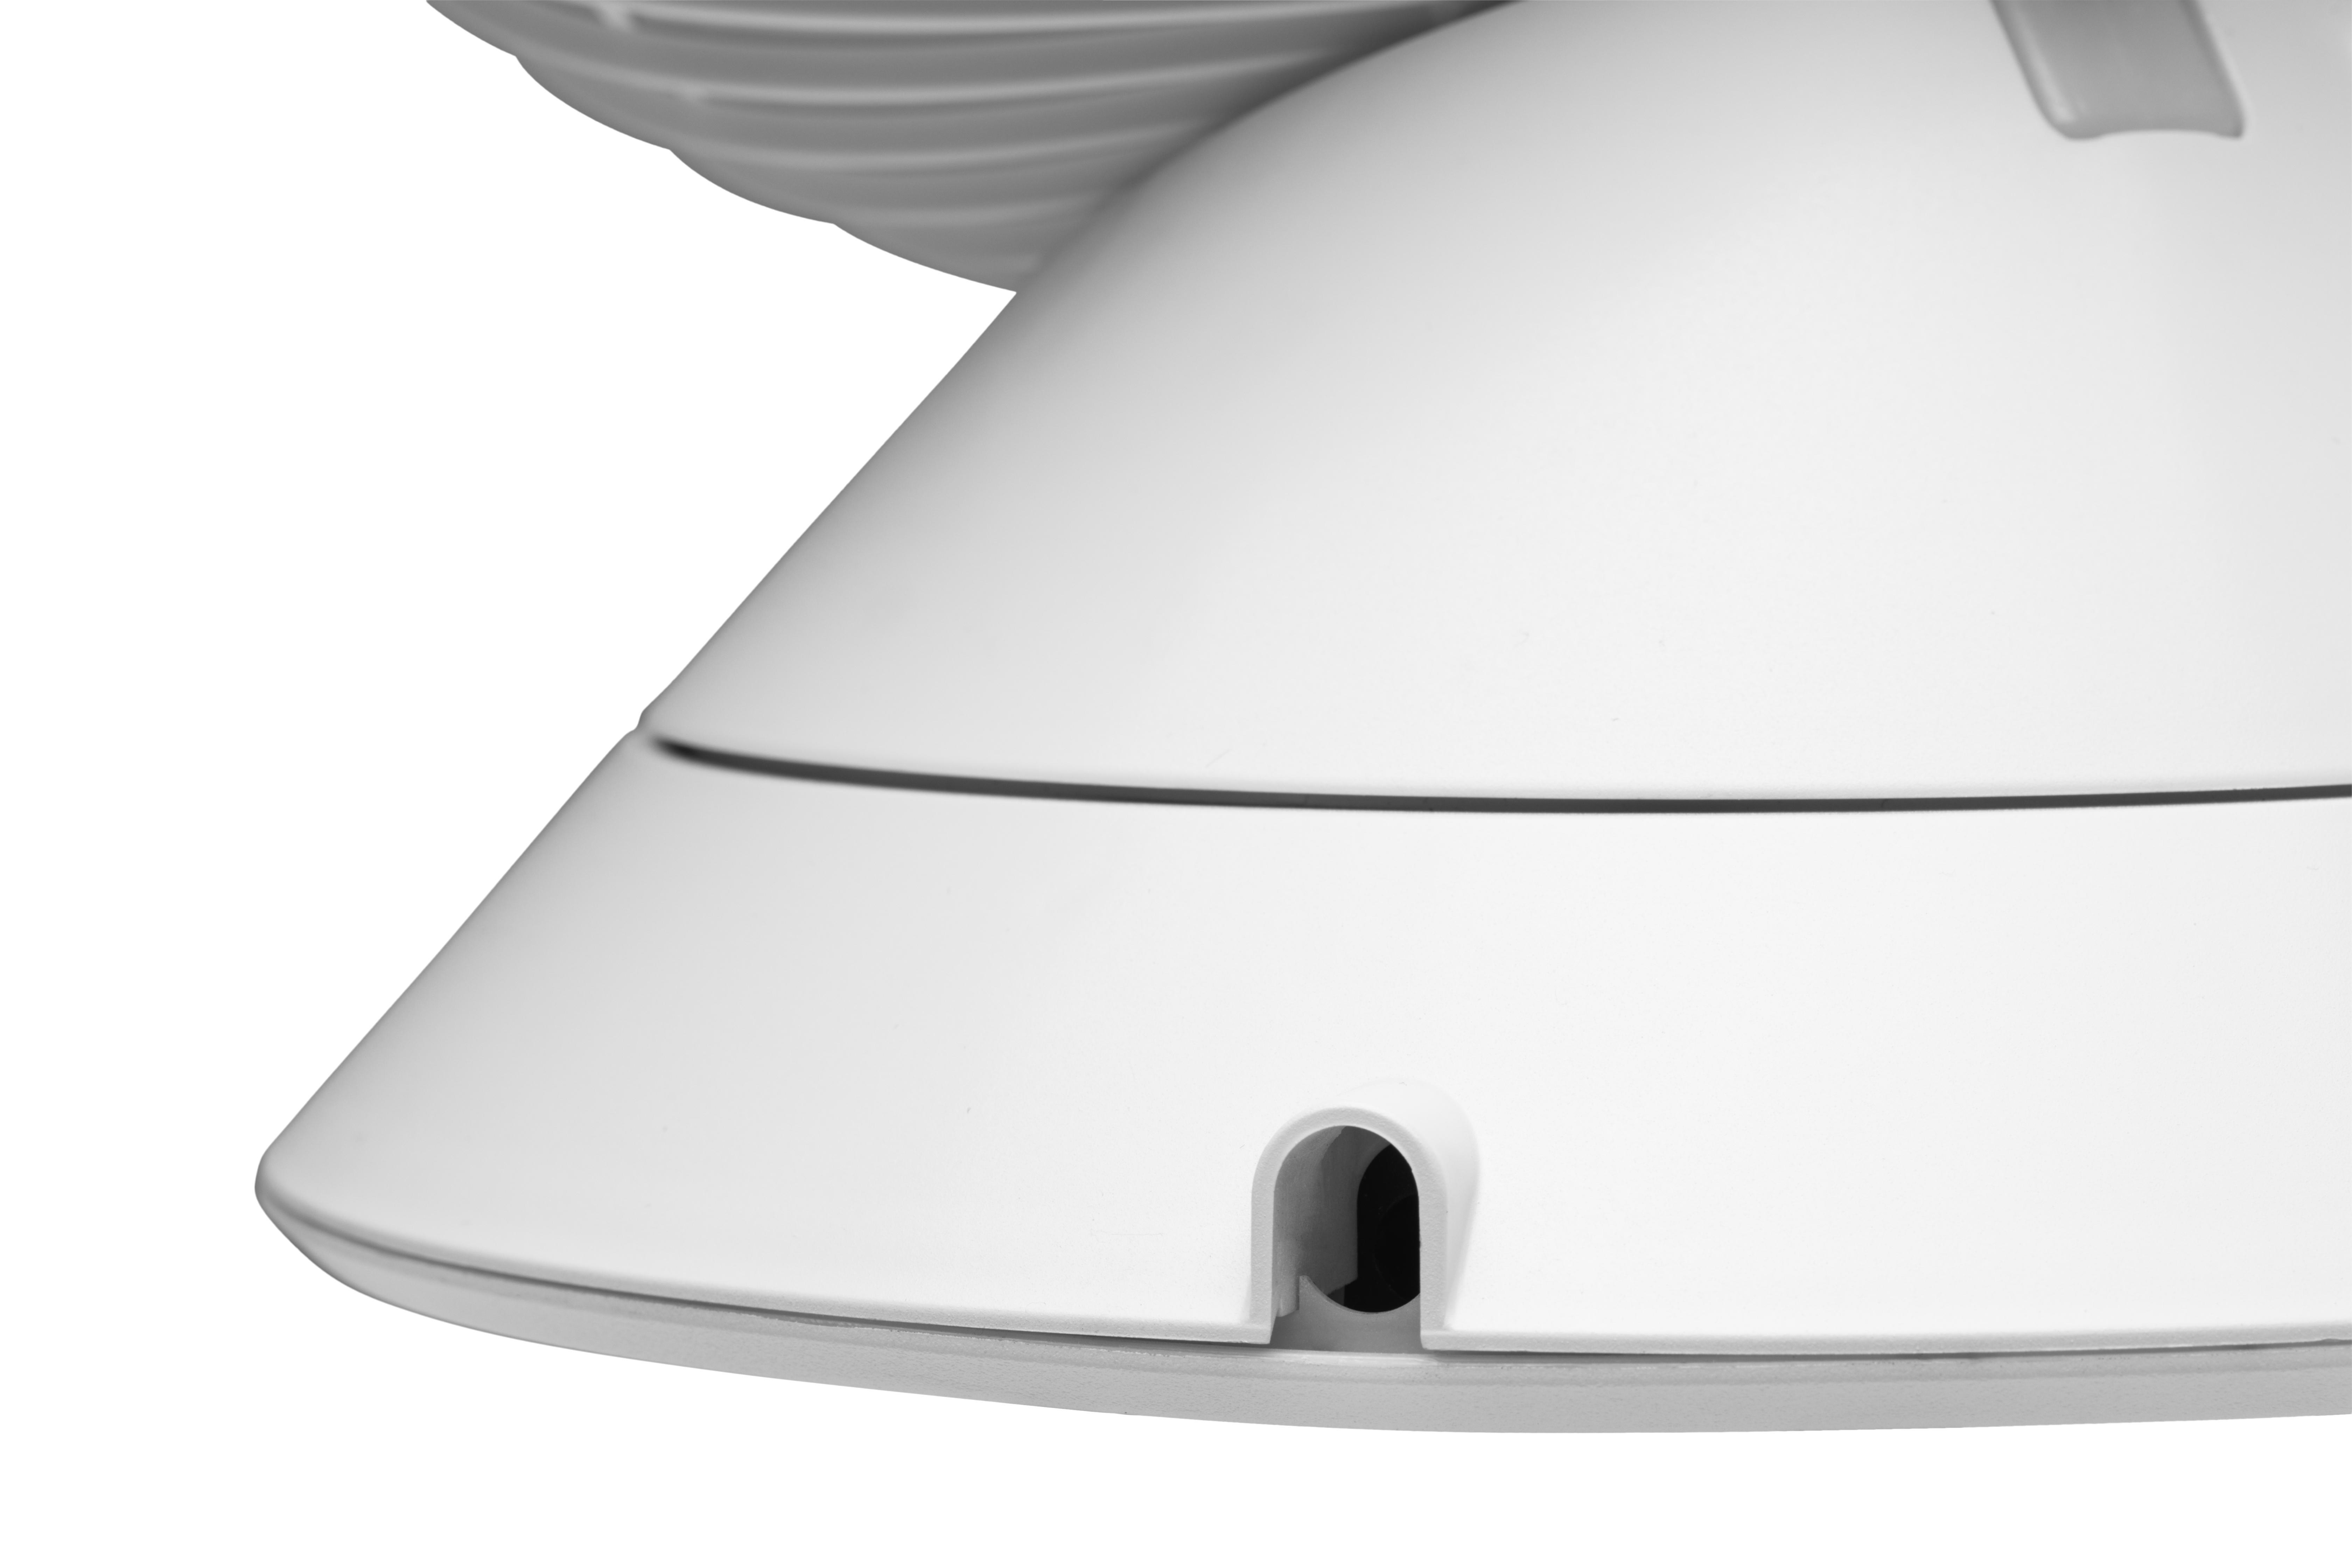 DXCF08 (23 Watt) Table Globe Fan Weiß Tischventilator DUUX